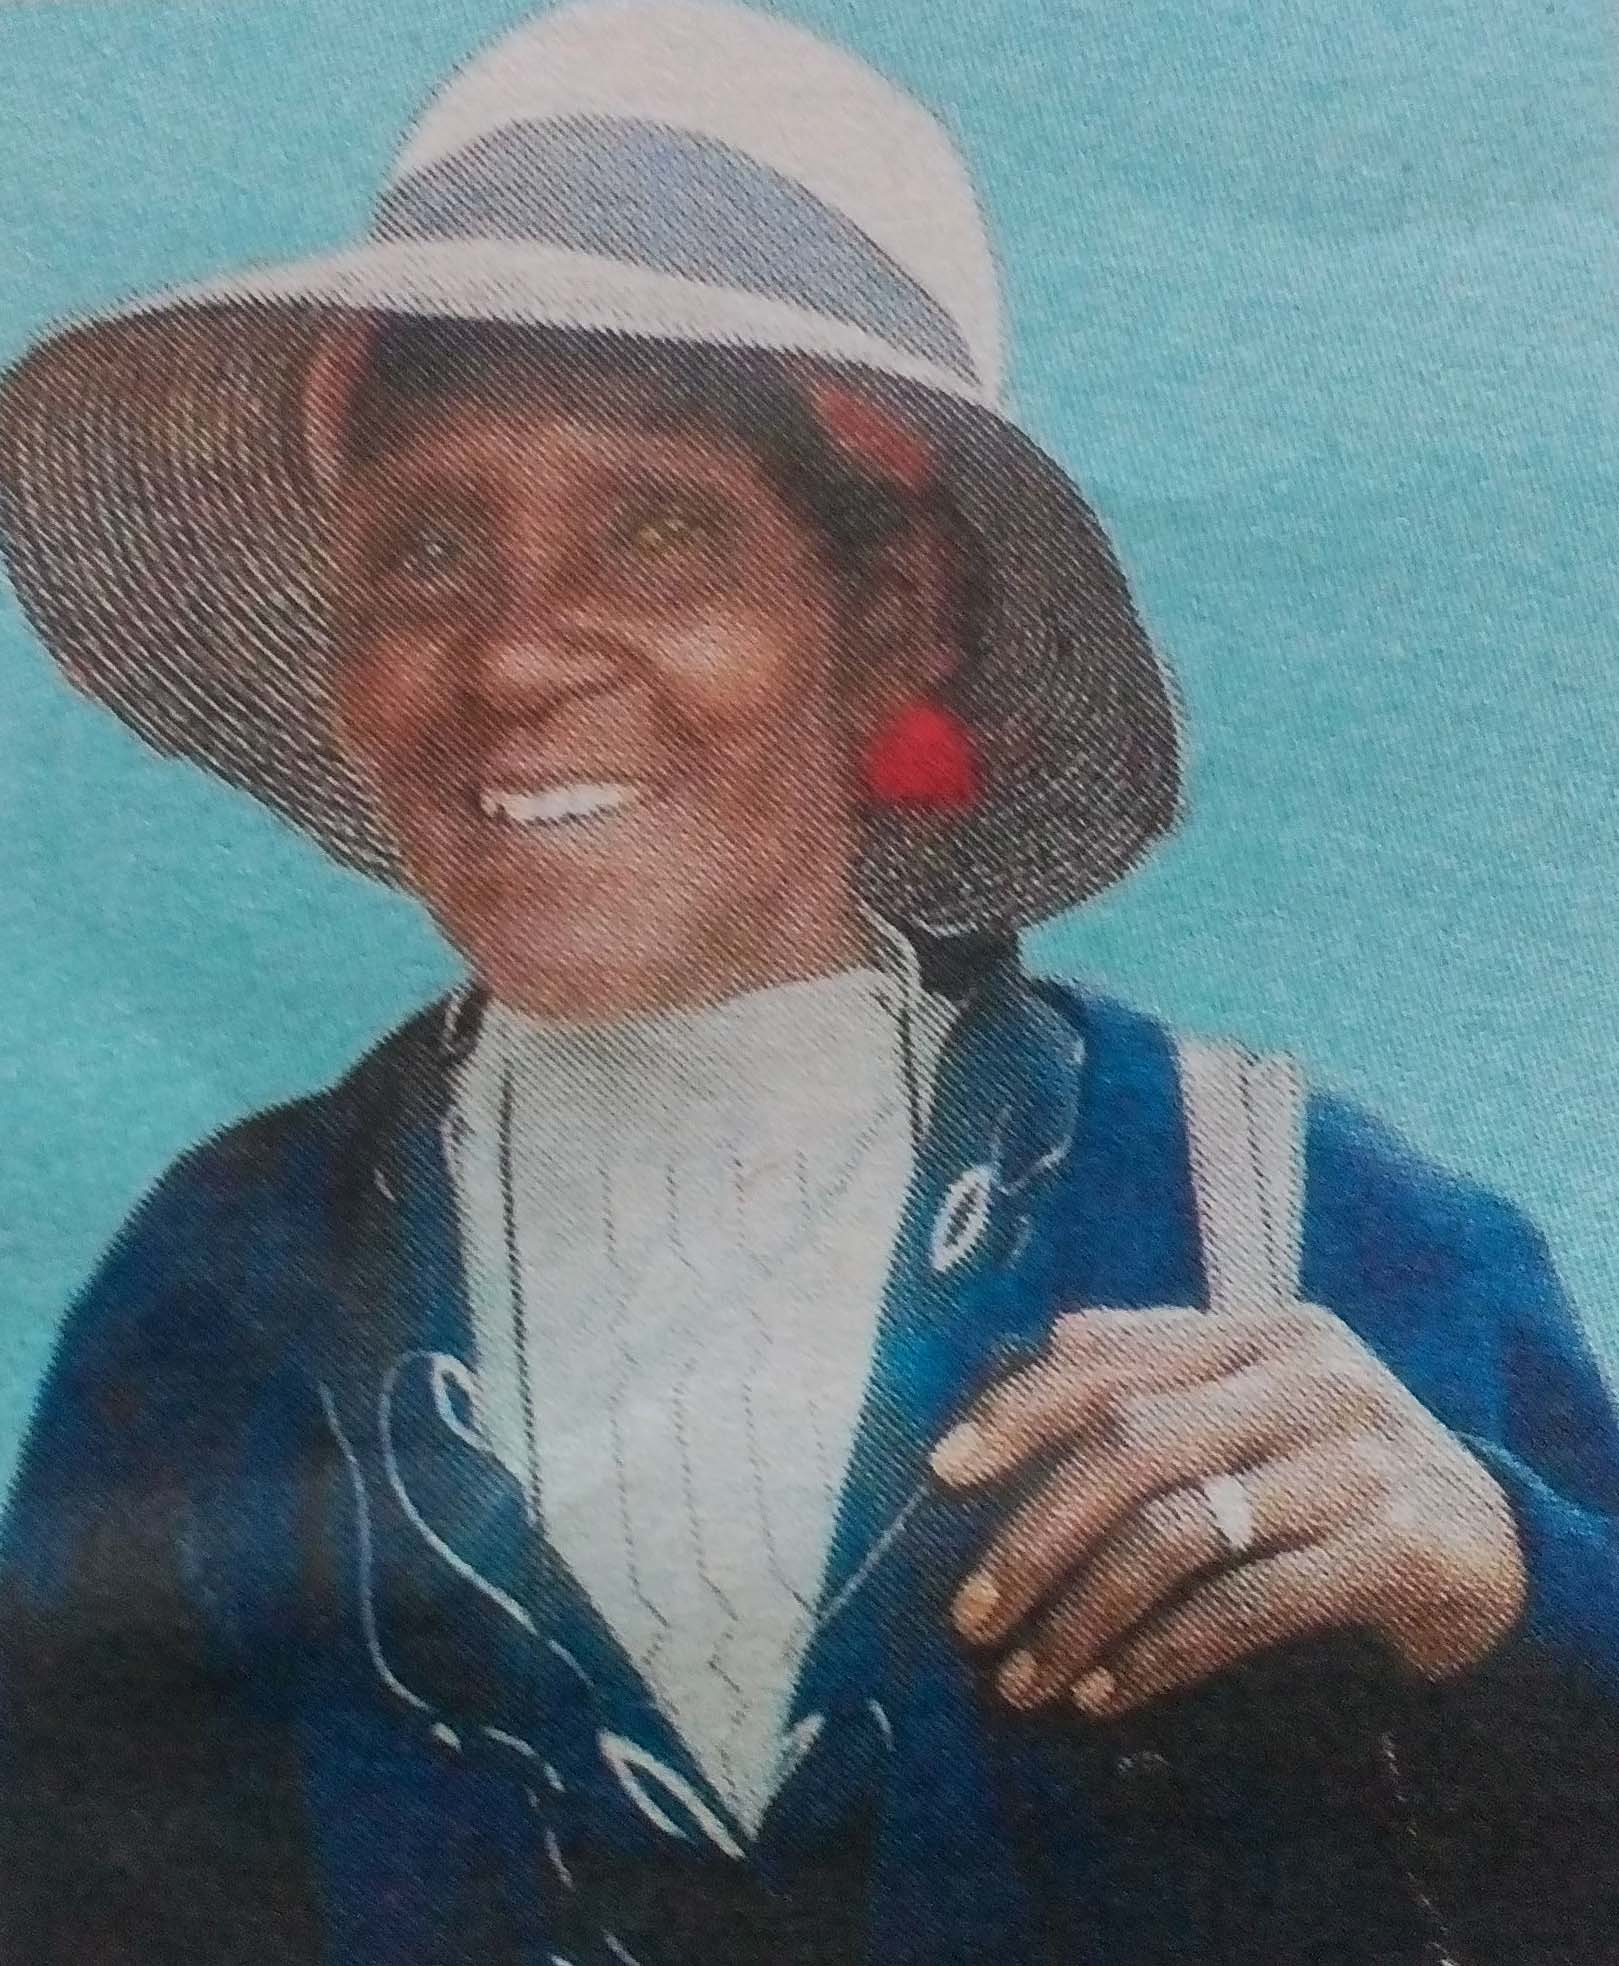 Obituary Image of Rachael Waithira Kamau